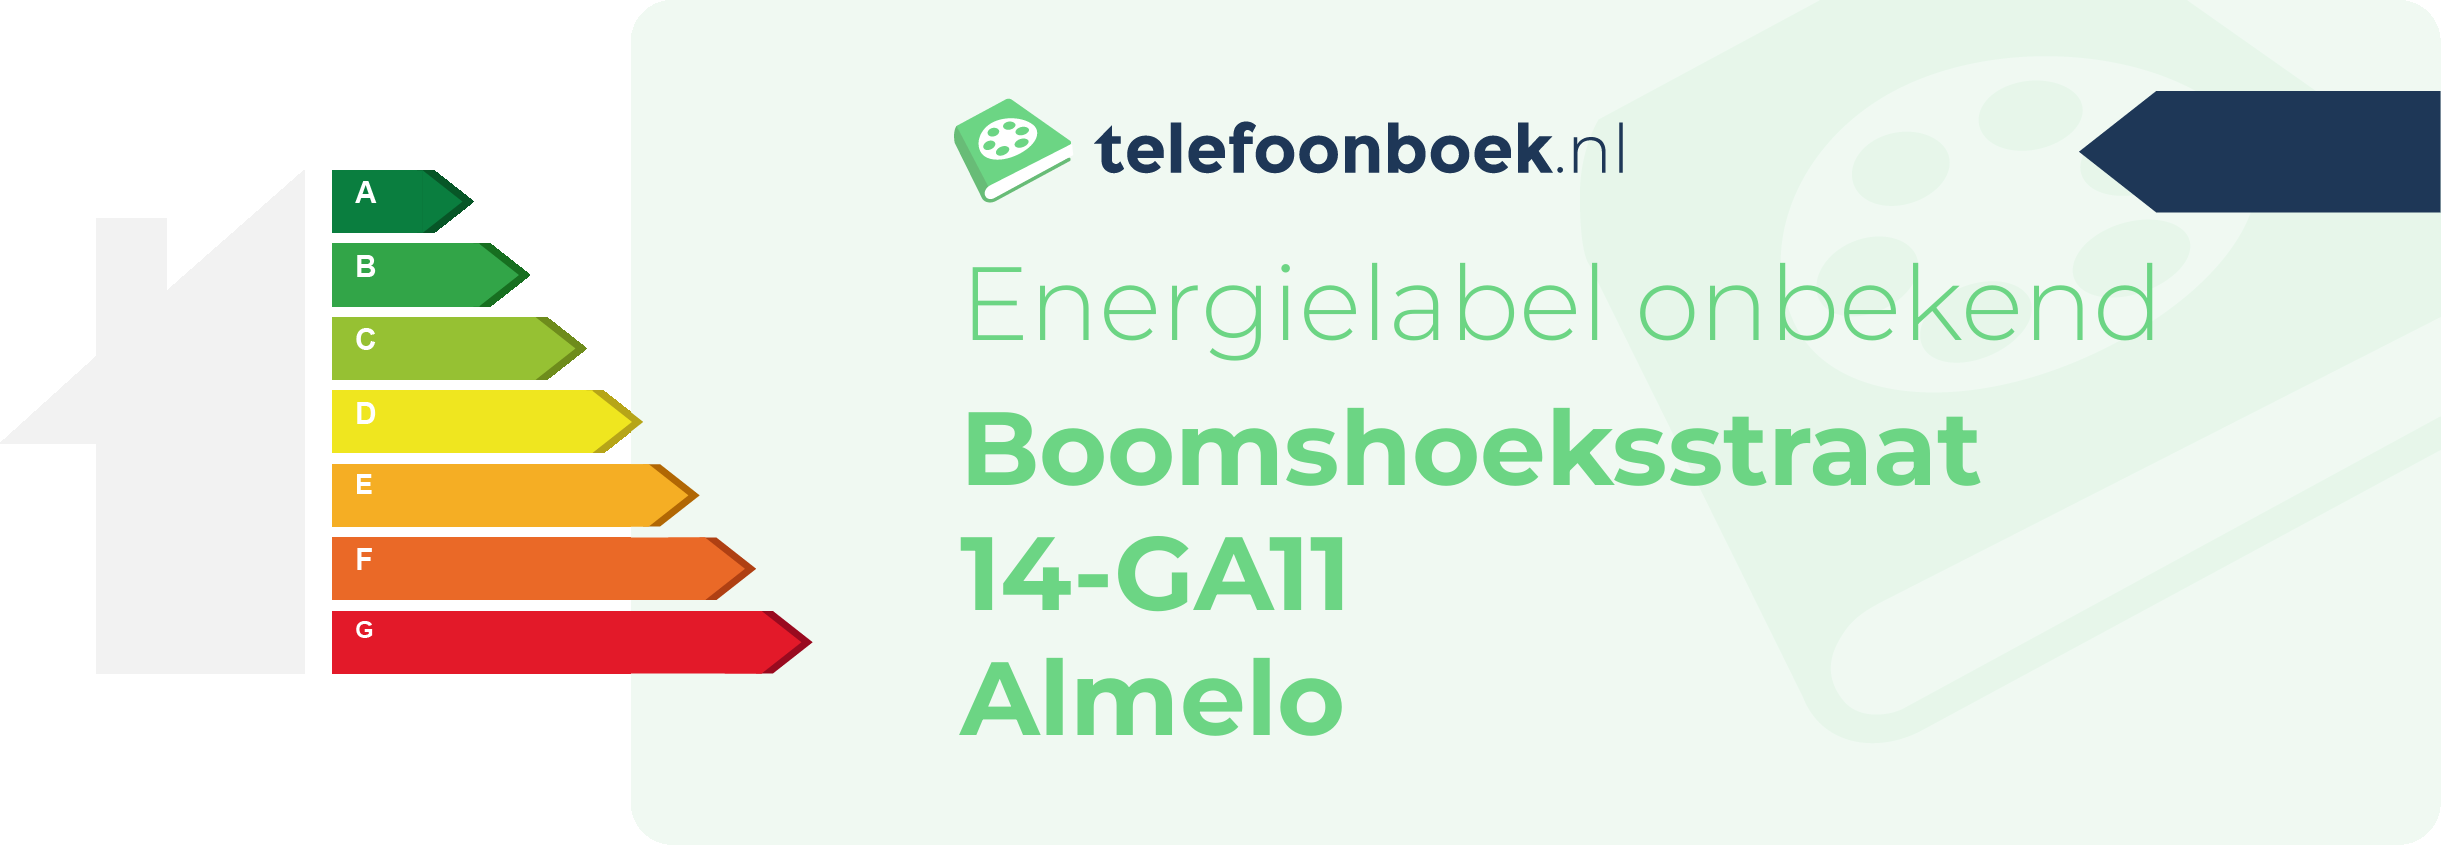 Energielabel Boomshoeksstraat 14-GA11 Almelo